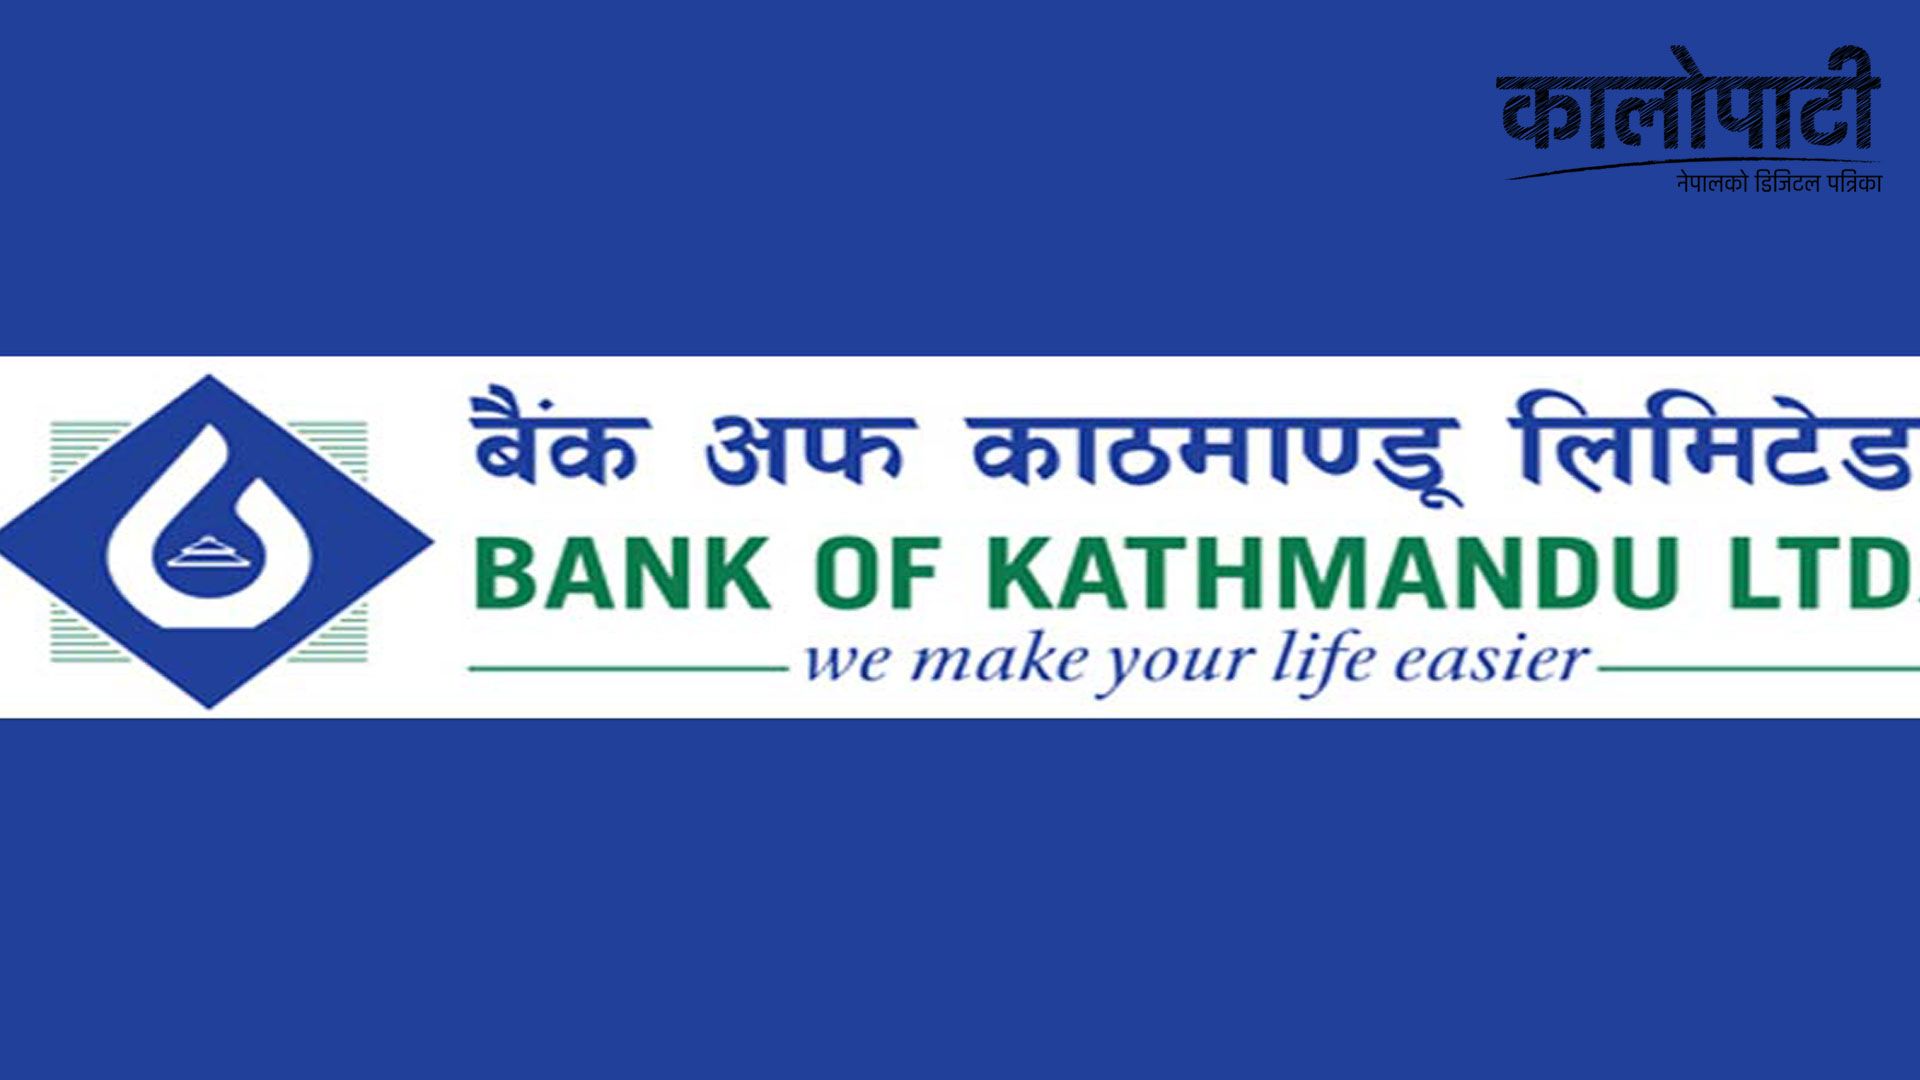 बैंक अफ काठमाण्डूको नयाँ शाखा कास्कीको पावरहाउसमा, उत्कृष्ट बैंकिङ सेवा उपलब्ध गराने बैंक प्रतिबद्ध